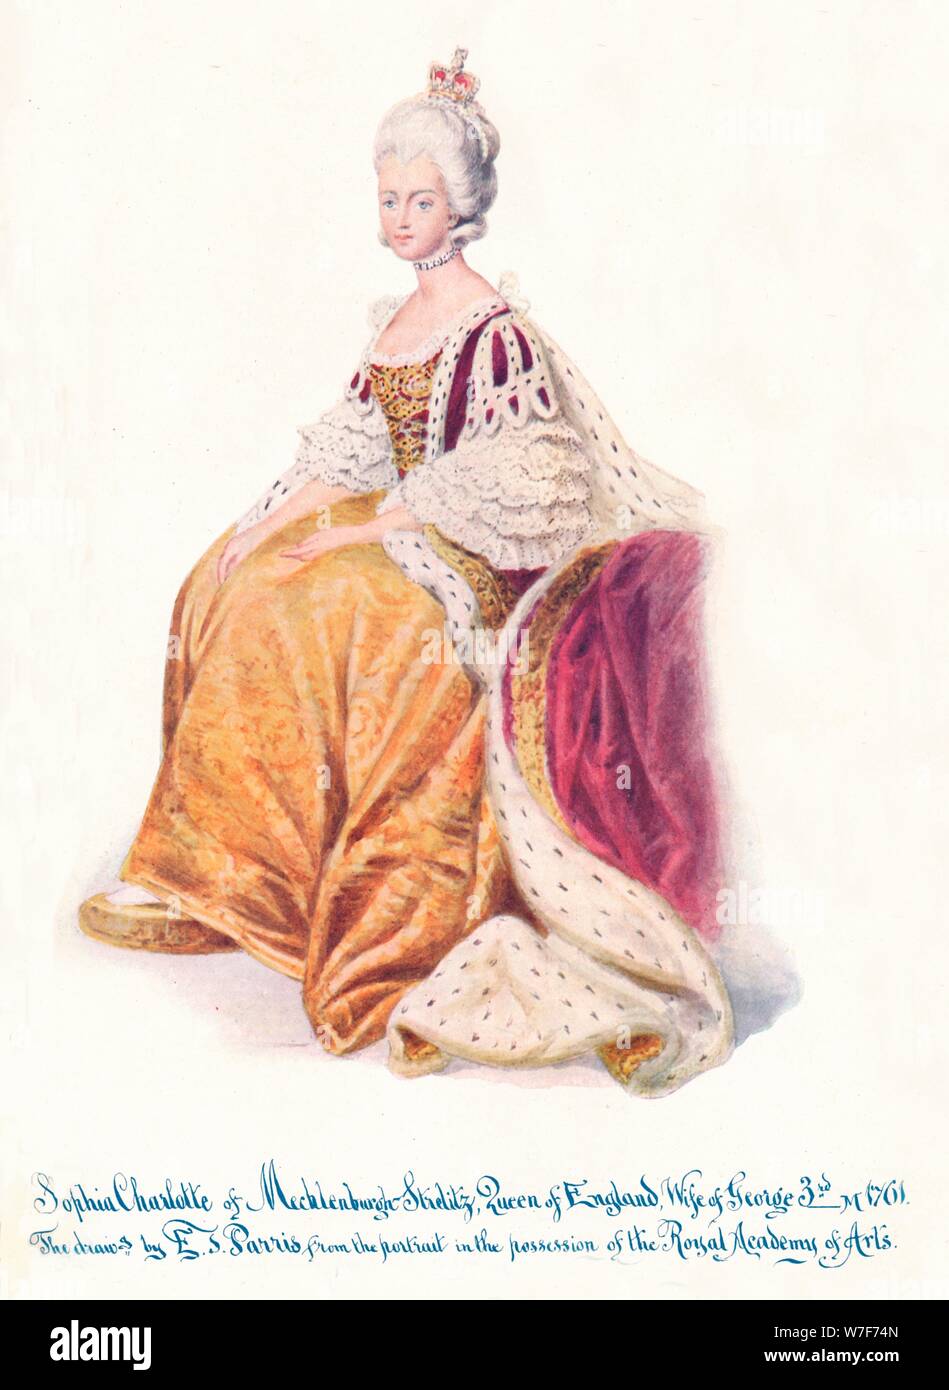 'Sophia Charlotte von Mecklenburgh Strellitz, Königin von England, Ehefrau von George 3.', 1911. Künstler: unbekannt. Stockfoto